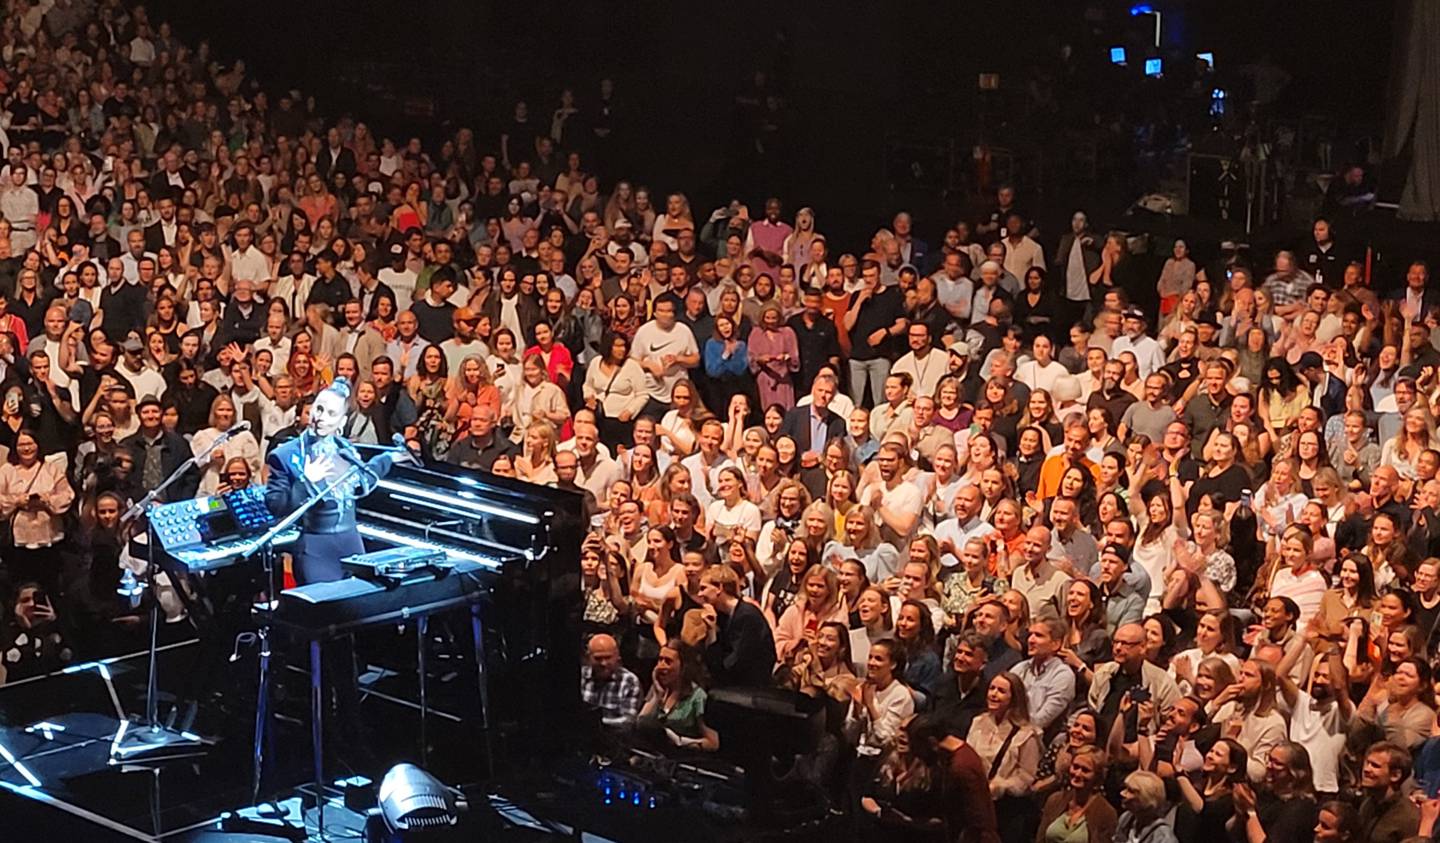 Superstjernen Alicia Keys på miniscenen midt ute blant publikum i Oslo Spektrum